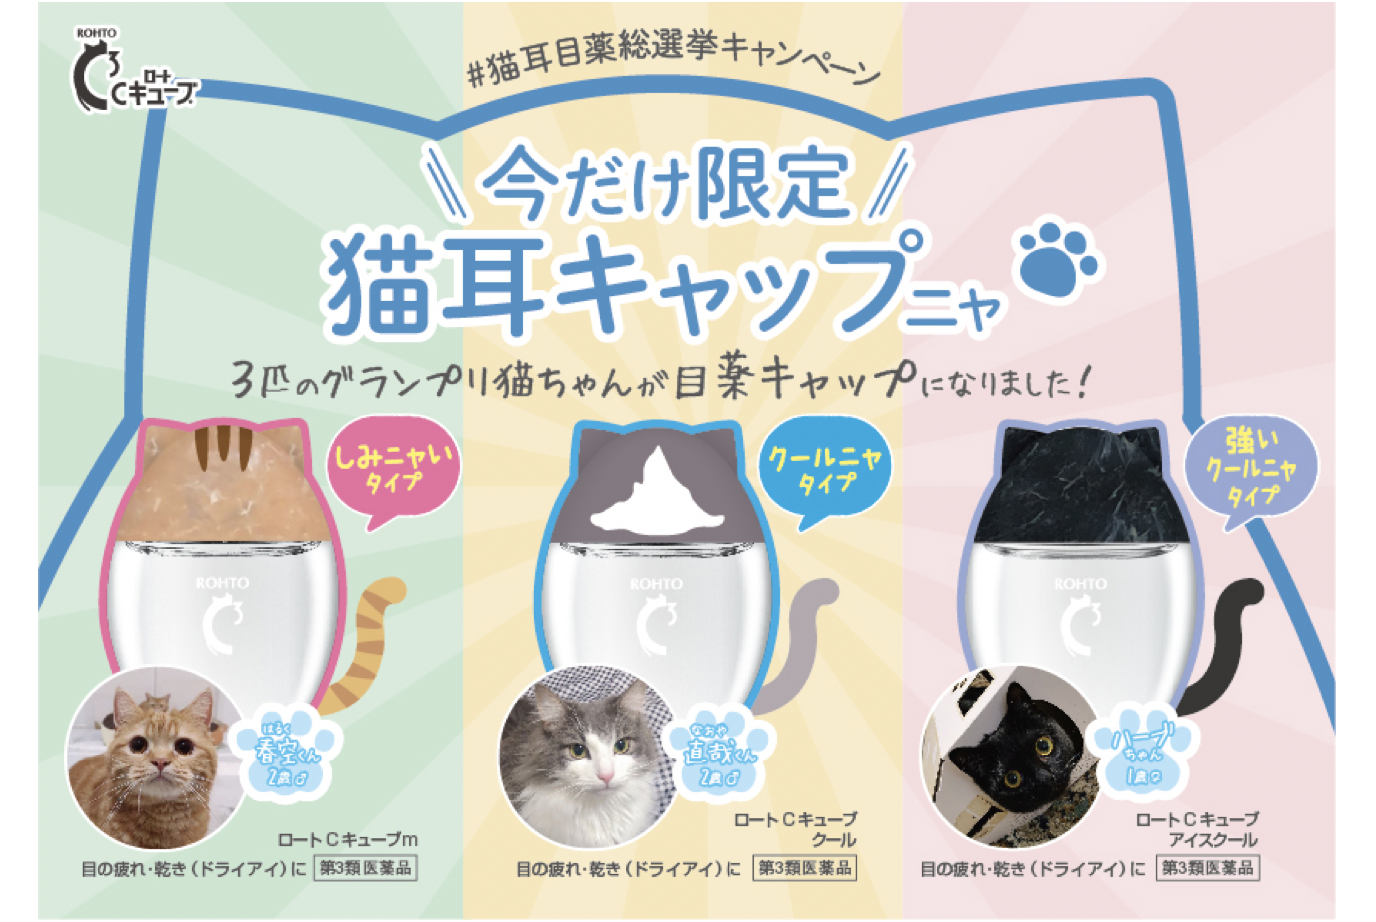 ロートCキューブ 限定猫耳目薬デザイン Animal Donation 日本初・動物のためのオンライン寄付サイト